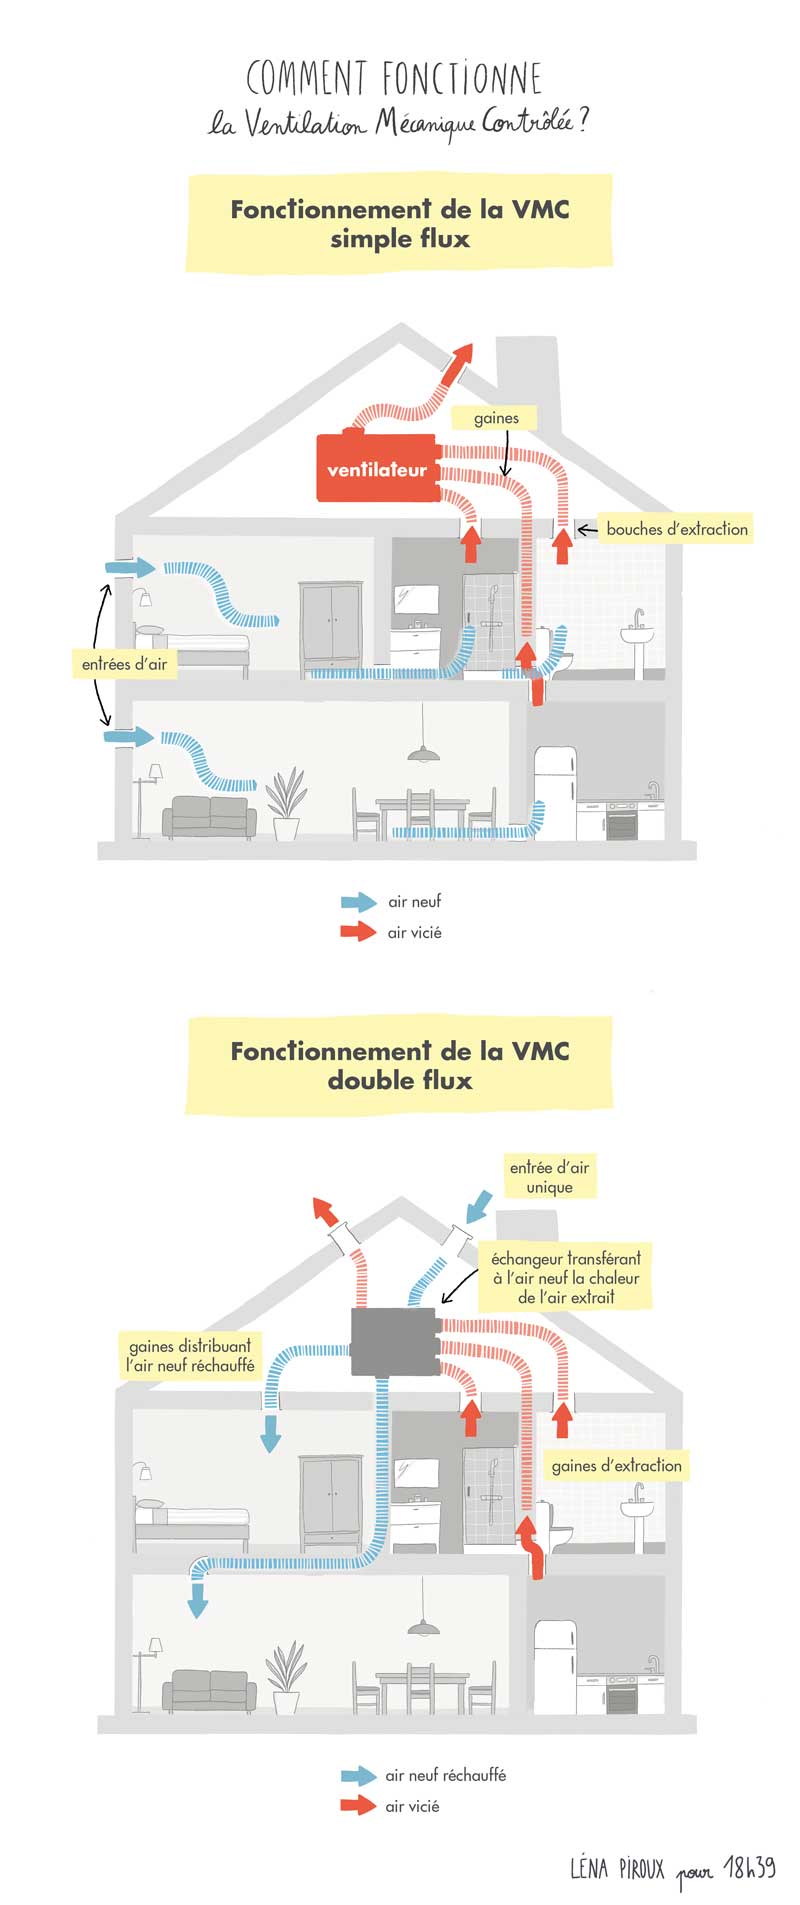 Comment fonctionne une VMC double flux ?